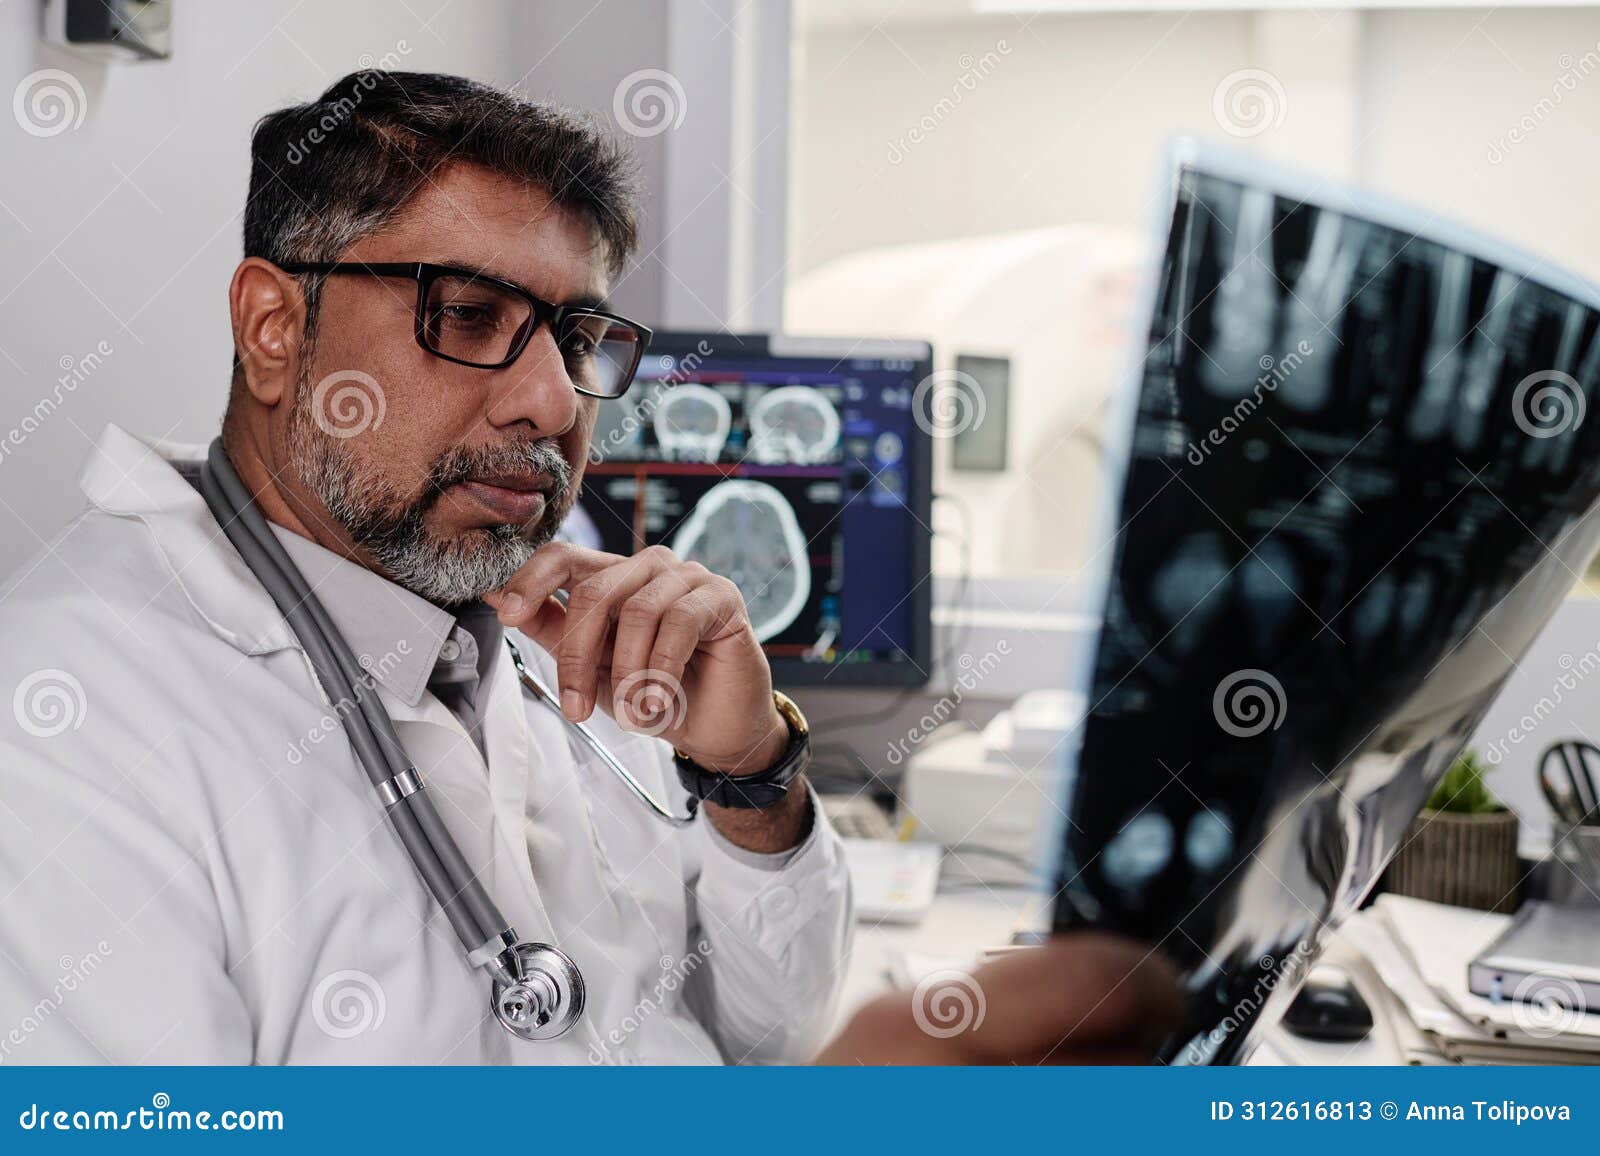 radiographer checking x-ray image